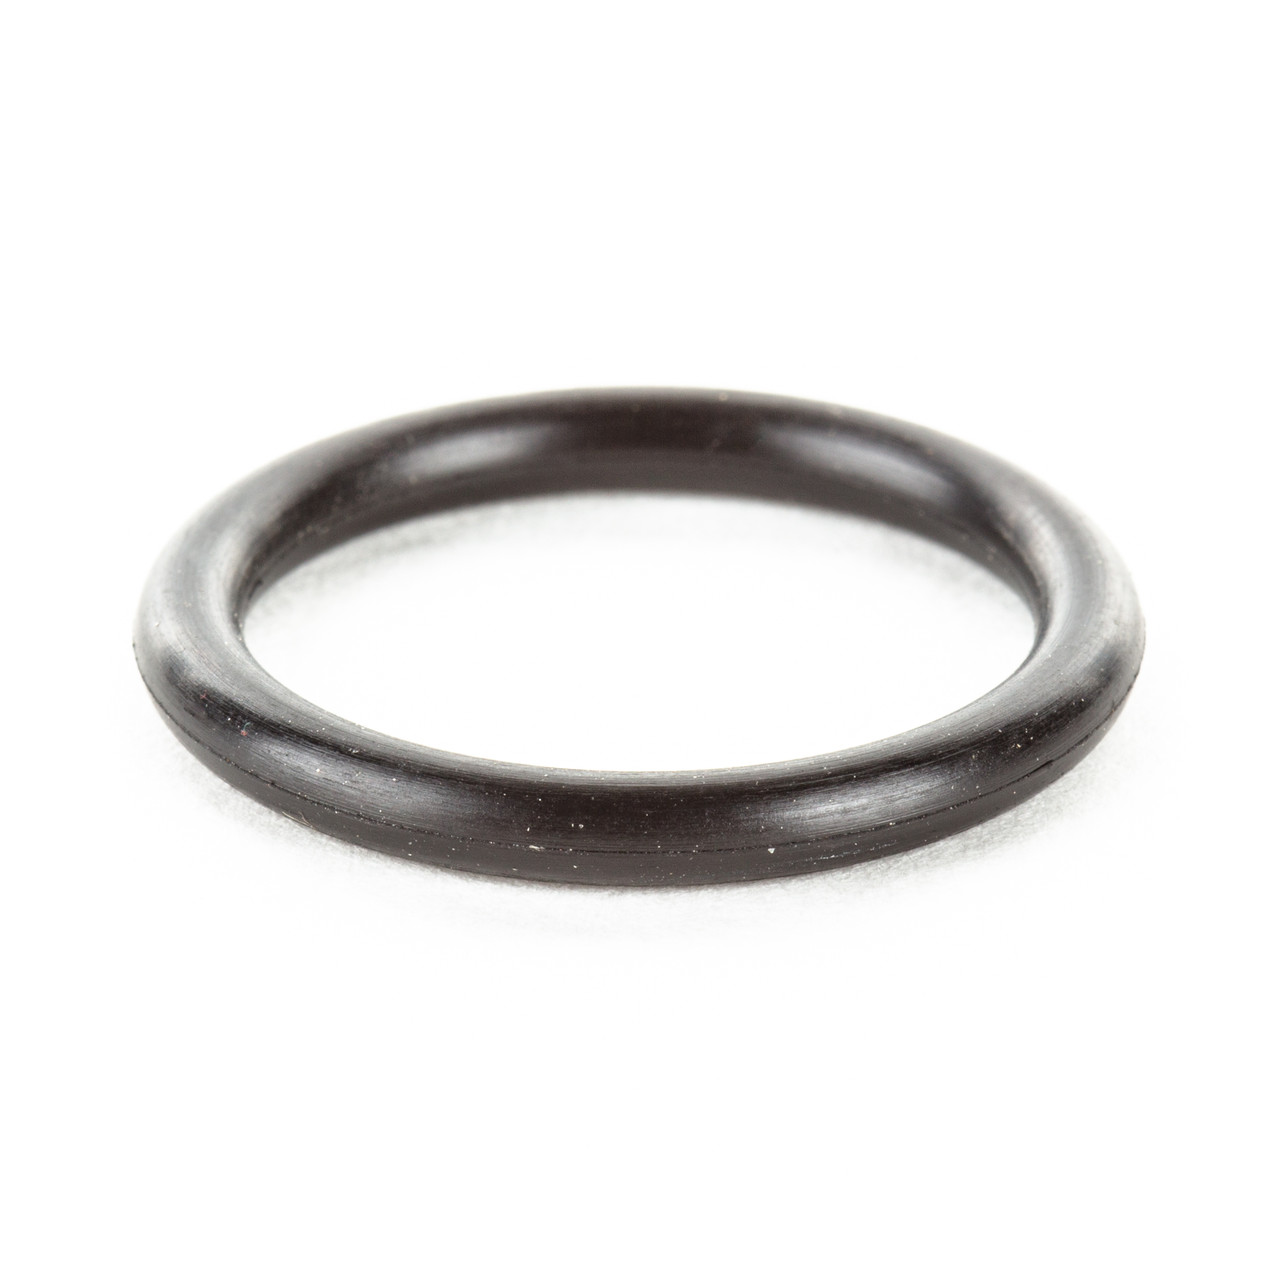 Amazon.com: Neoprene Wedding Ring